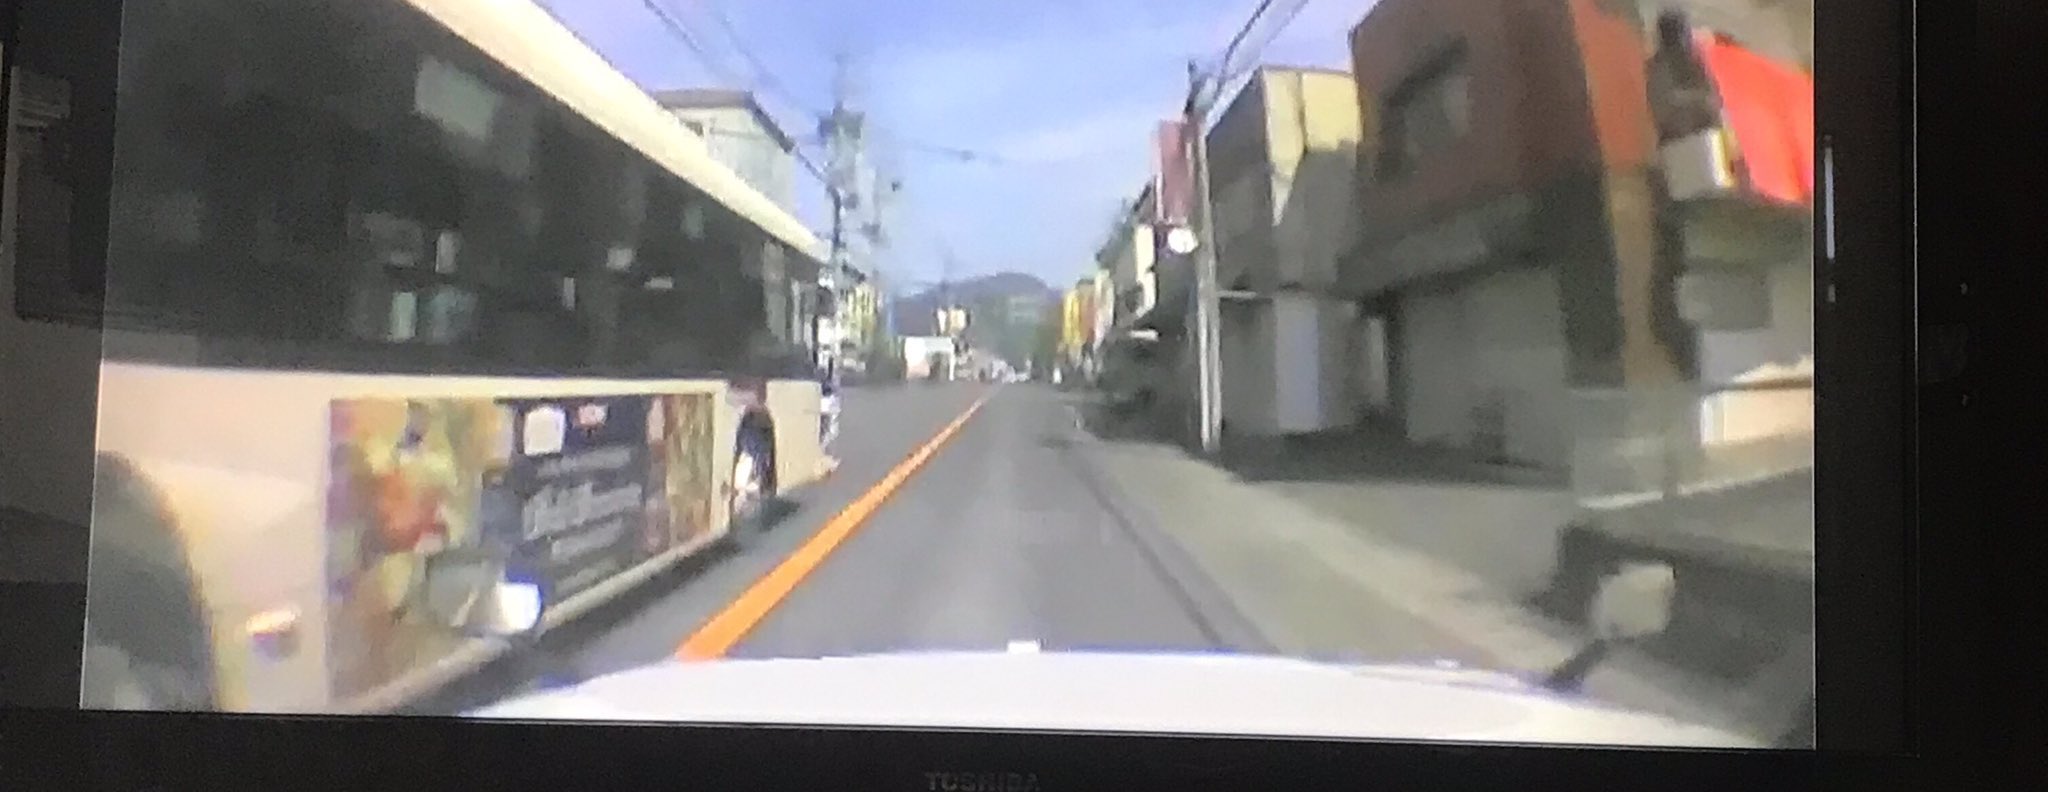 ゆずゆずʢ ꇵ ʡ 静岡のバス停は近くにちゃんと信号機つきの横断歩道あるんですよ 交通量多い所で バスの運転手さんも必ず 危ないから横断しないでください ってアナウンスしてます 横断歩道あるんだから使ってほしい とくダネ 全国に広がる